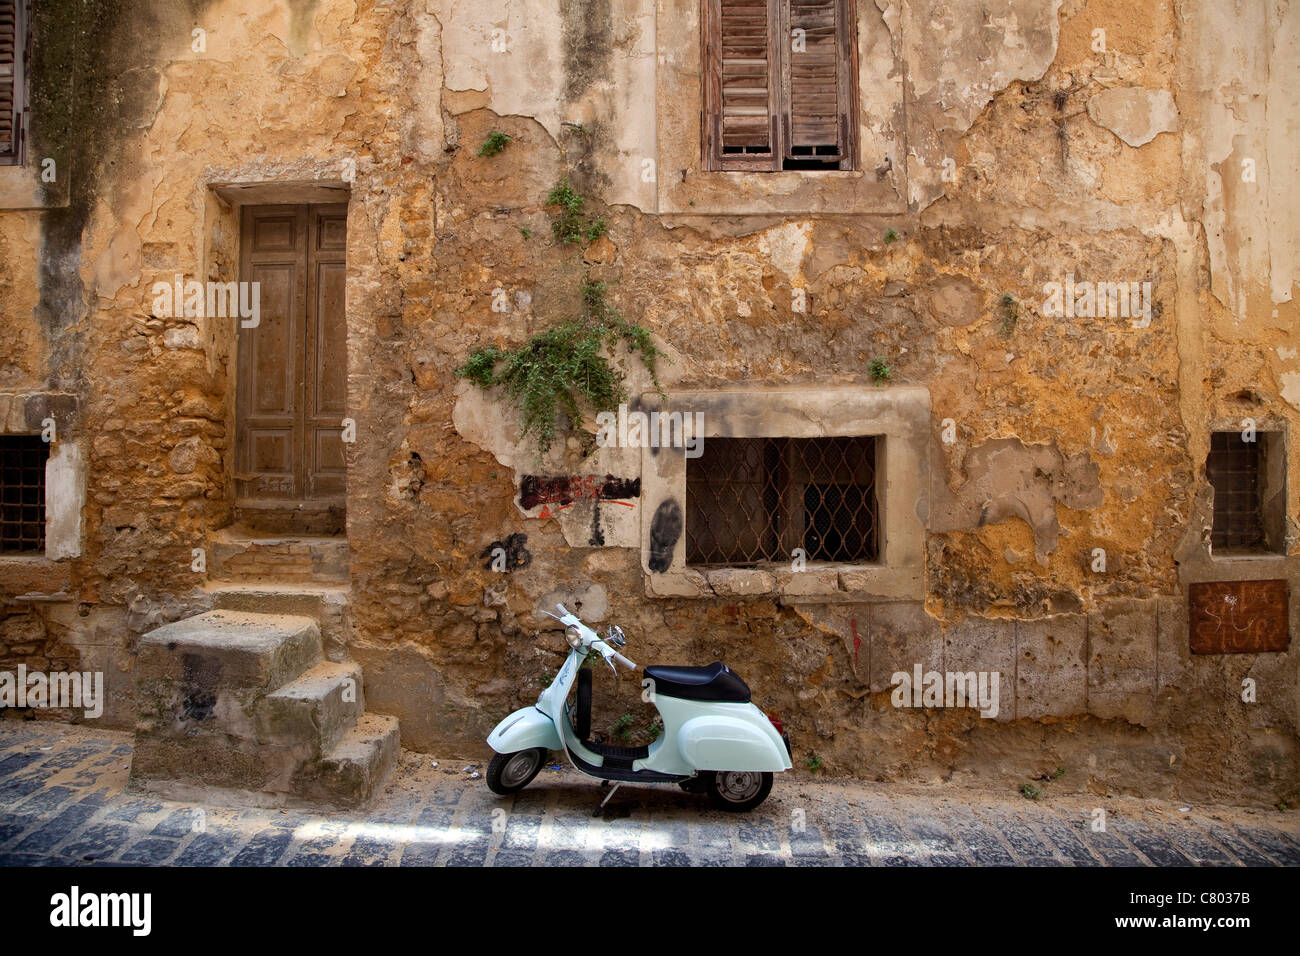 Alte Vespa 50 Roller auf der Straße in Caltagirone (Sizilien, Italien)  geparkt. Vintage Piaggio Moped Motorrad in der Nähe der alten Gebäudewand  in Sicilia, Italia Stockfotografie - Alamy